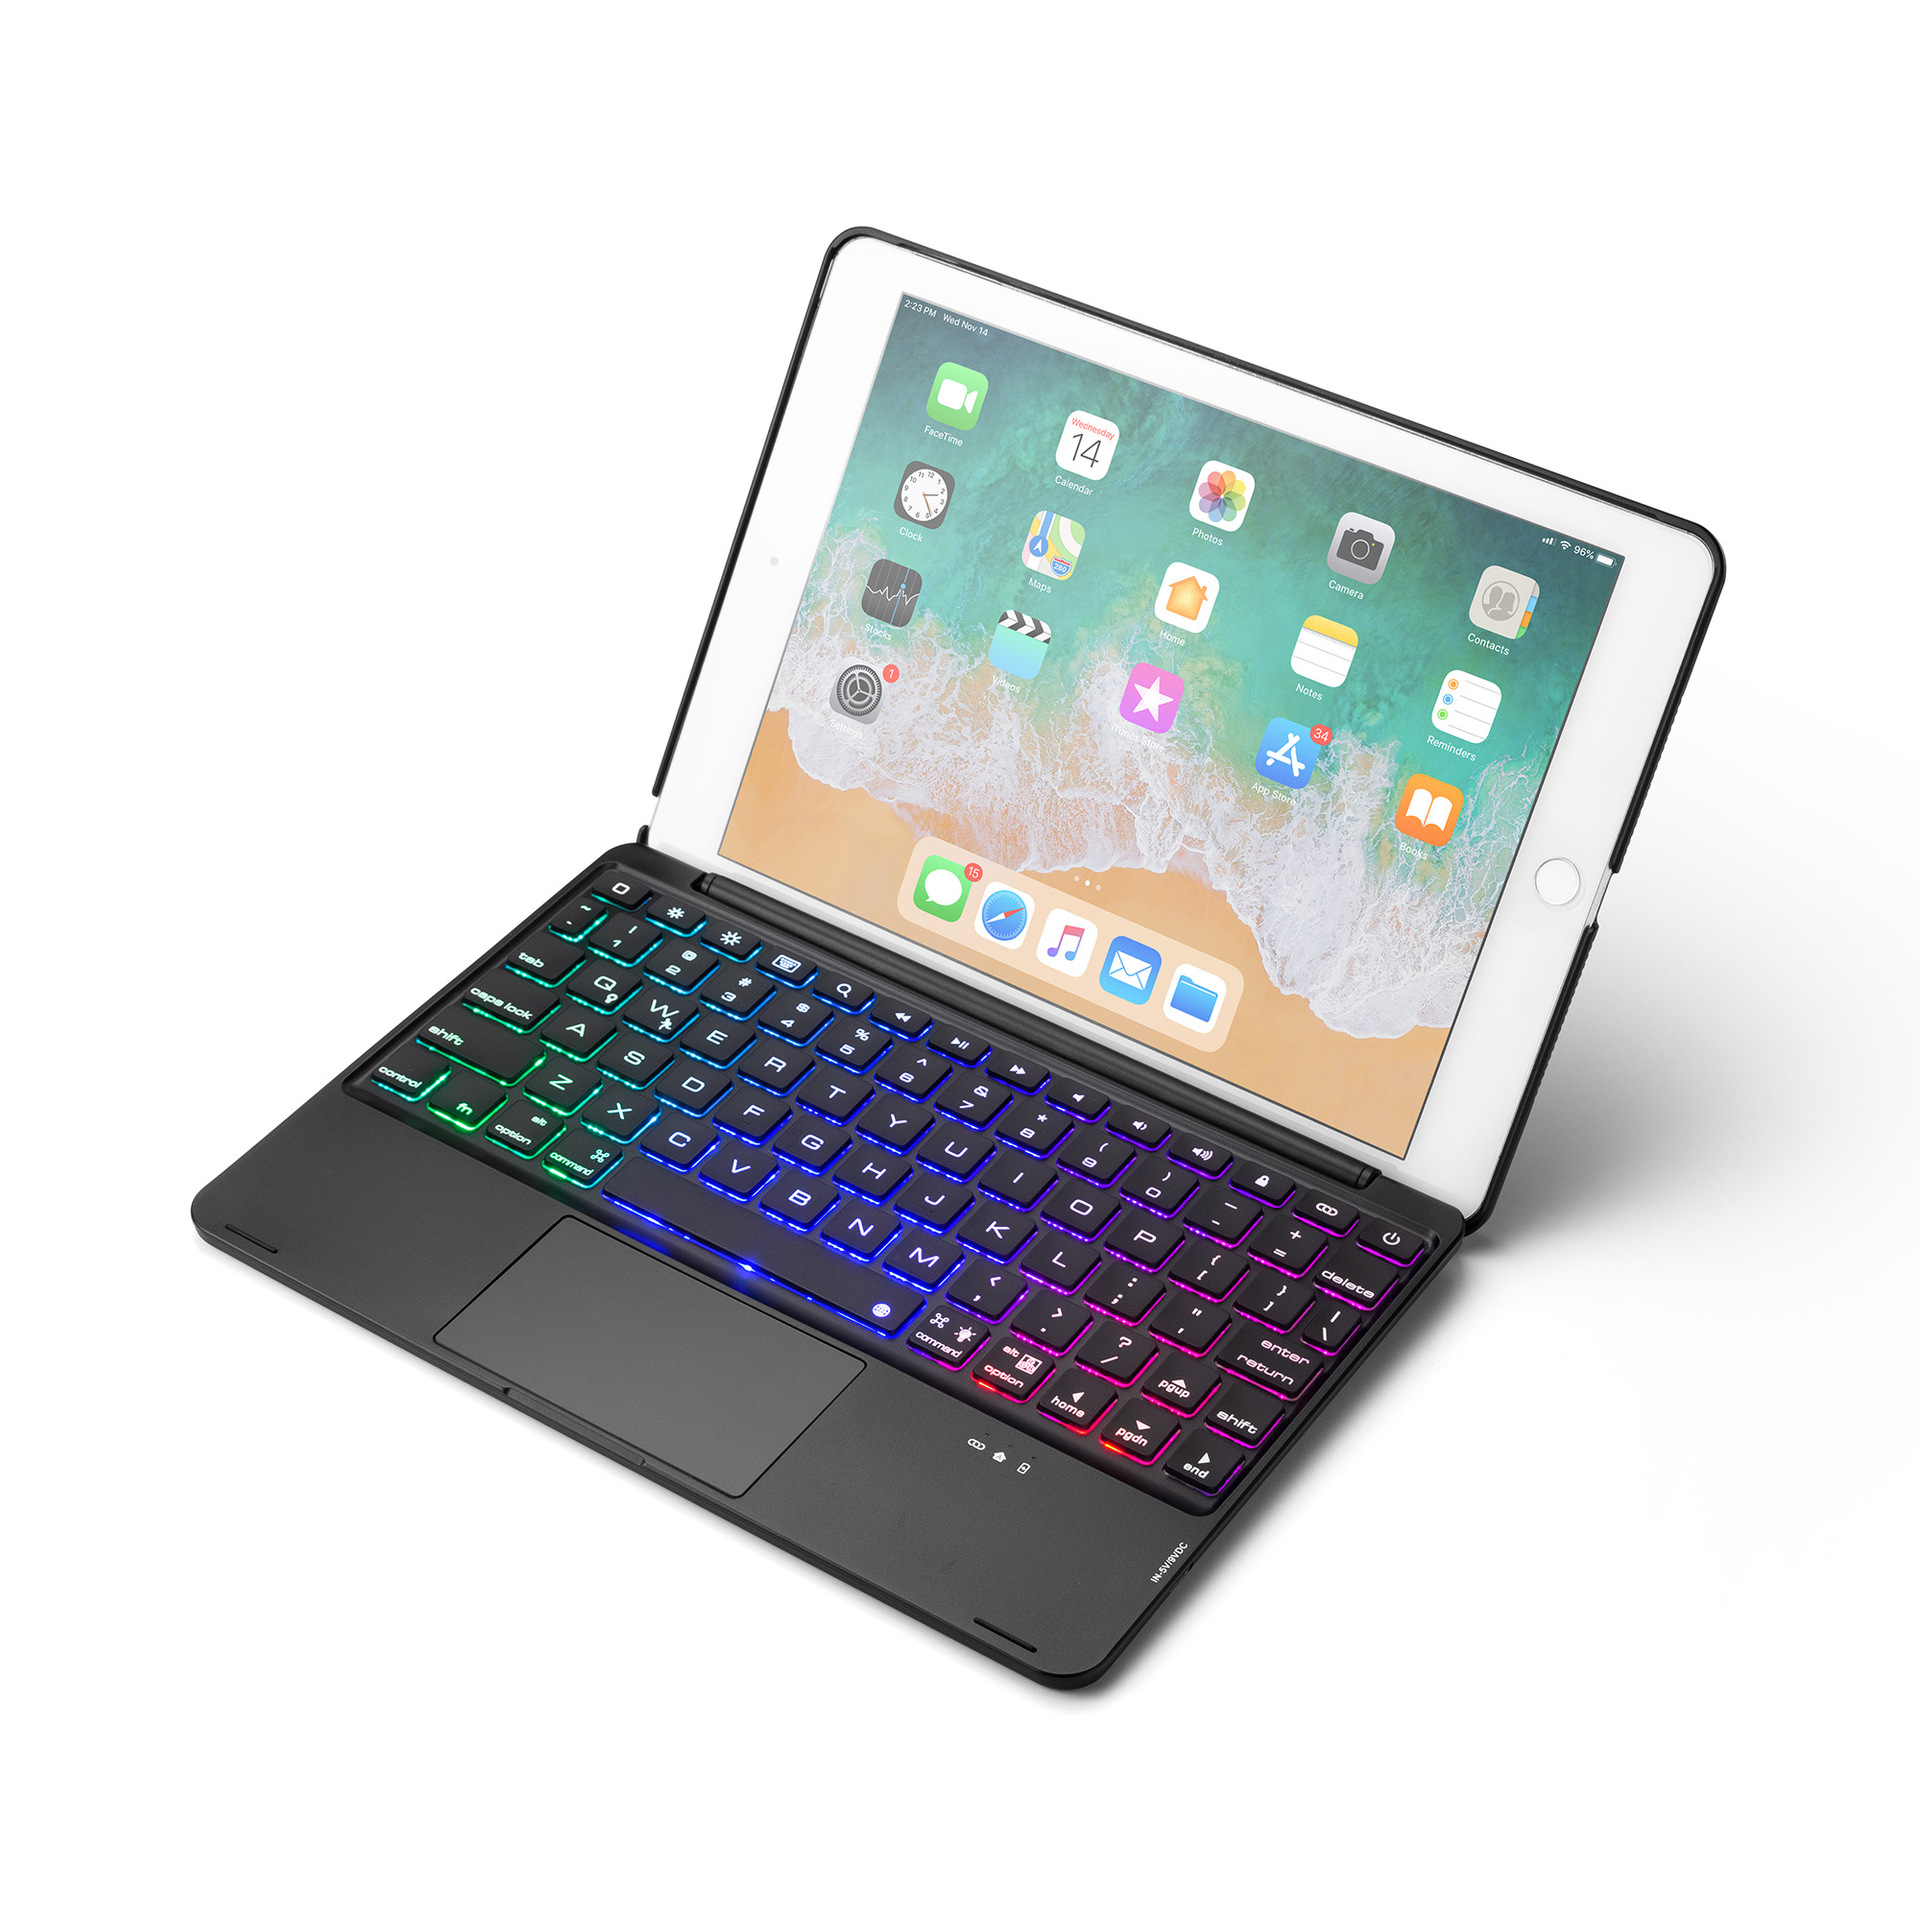 Bàn phím cho iPad màn hình 9.7 inch - 7 màu đèn cho bàn phím - Có touchpad tiện lợi - Hàng chính hãng